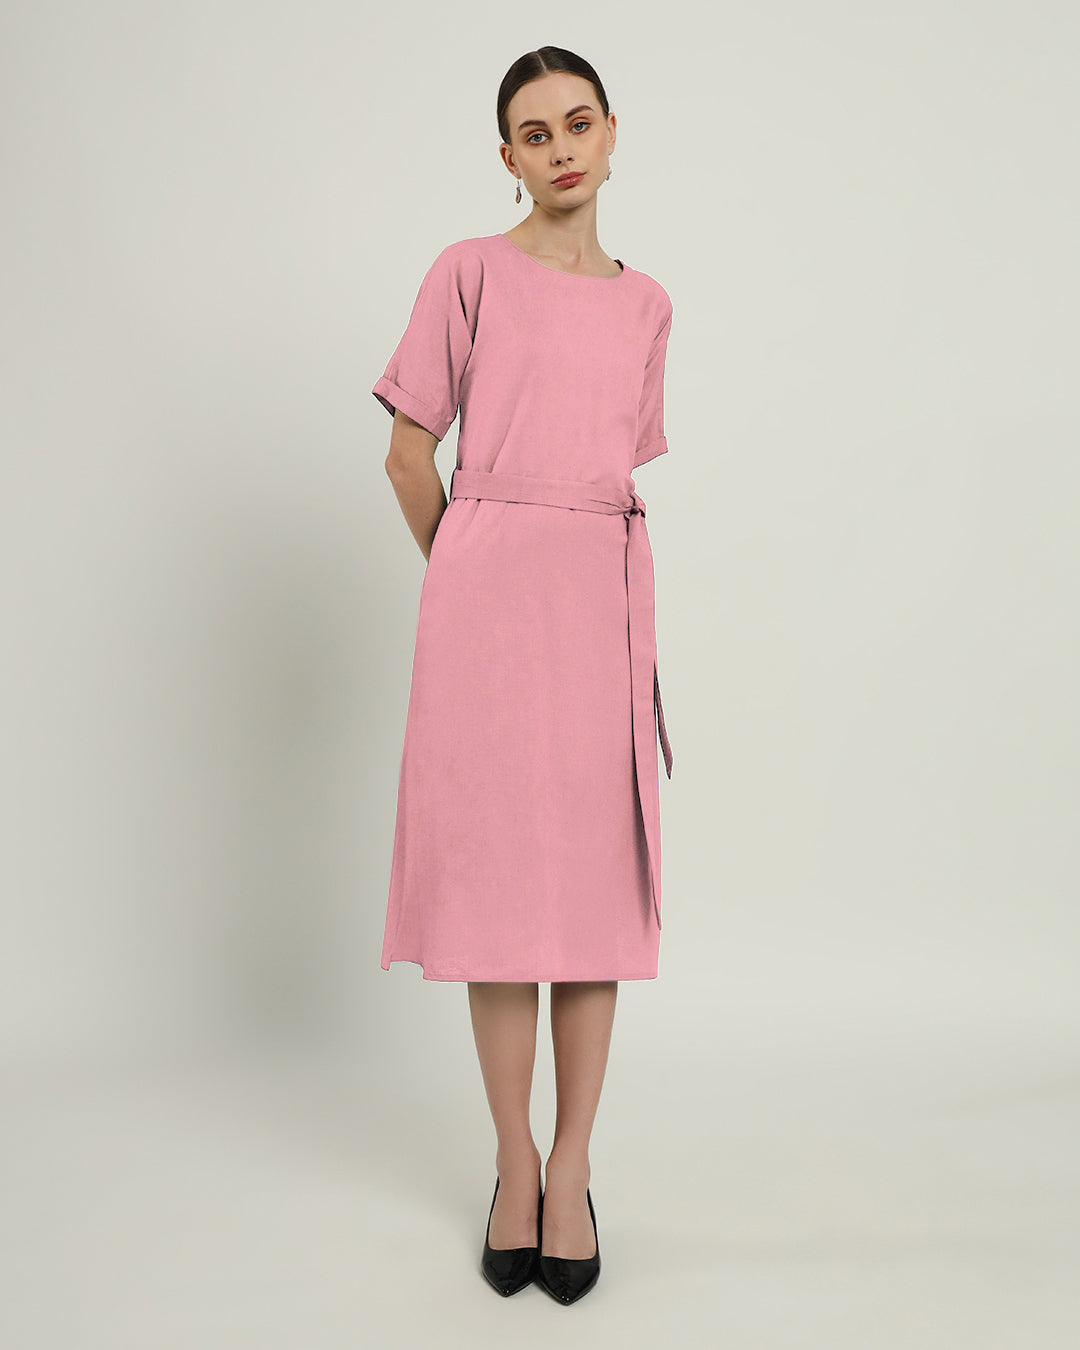 The Tayma Fondant Pink Cotton Dress